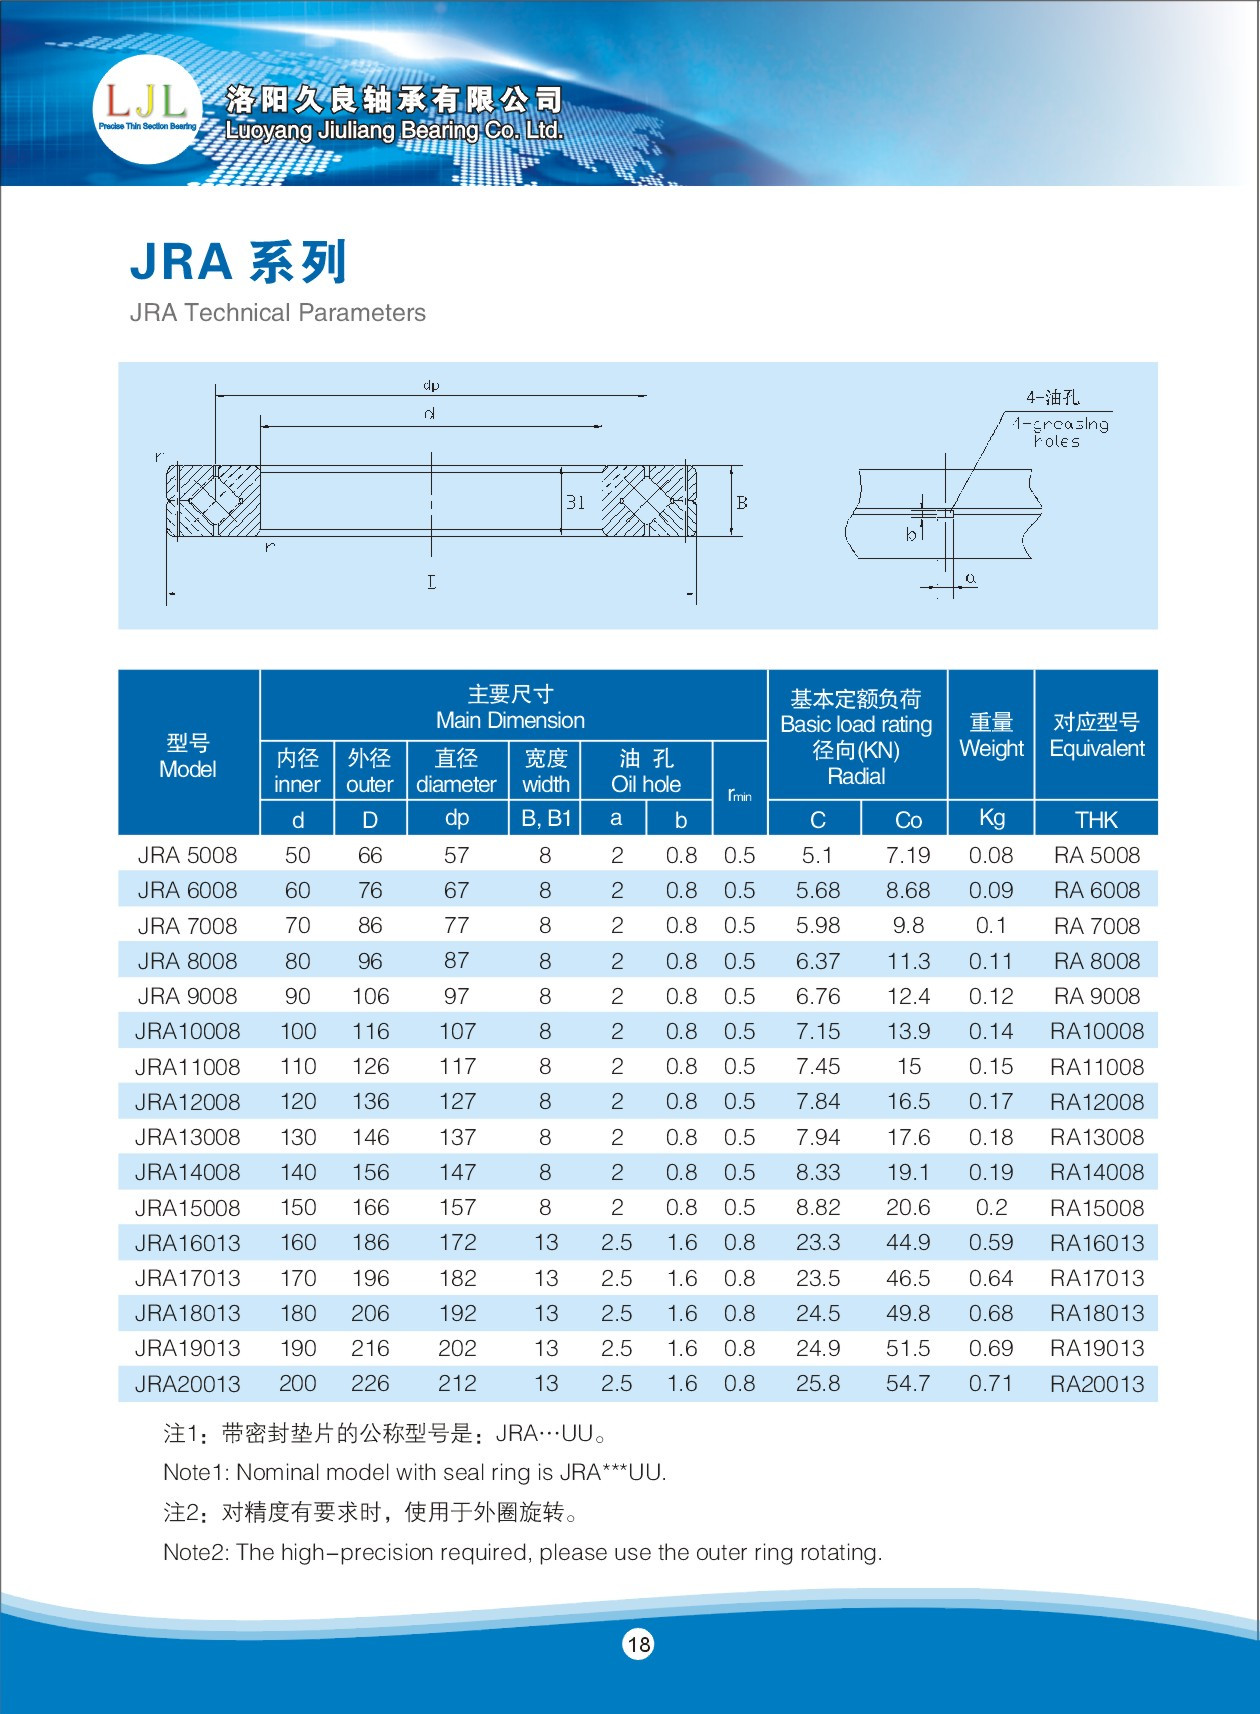 JRA 5008	 | 
JRA 6008	 | 
JRA 7008	 | 
JRA 8008	 | 
JRA 9008	 | 
JRA 10008	 | 
JRA 11008	 | 
JRA 12008	 | 
JRA 13008	 | 
JRA 14008	 | 
JRA 15008	 | 
JRA 16013	 | 
JRA 17013	 | 
JRA 18013	 | 
JRA 19013	 | 
JRA 20013	 | 